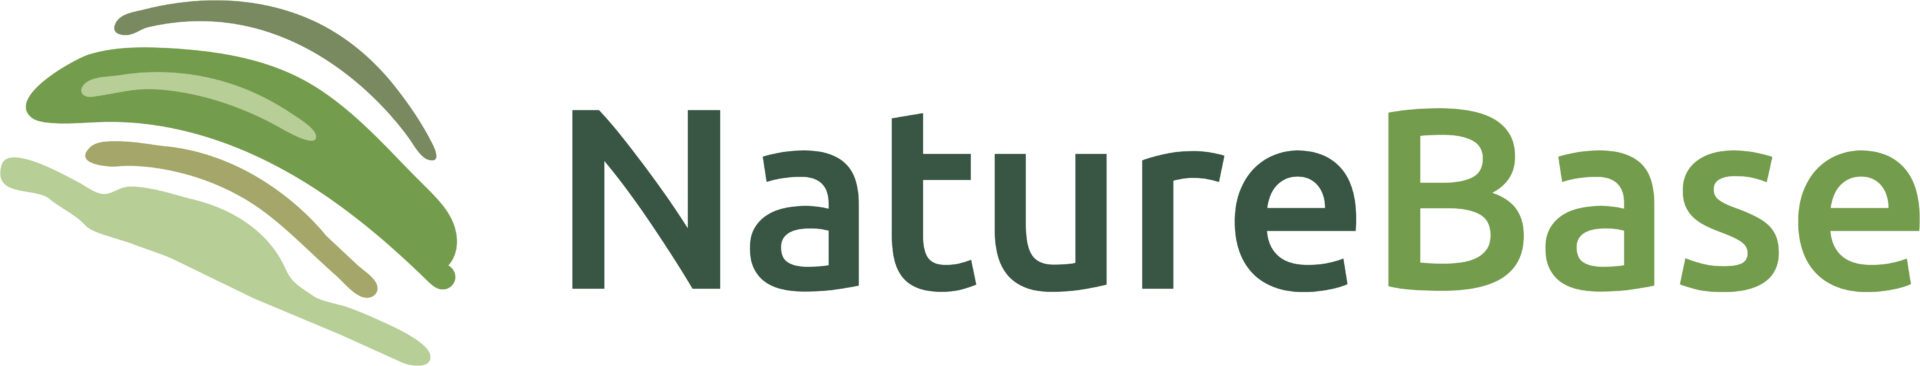 NatureBase